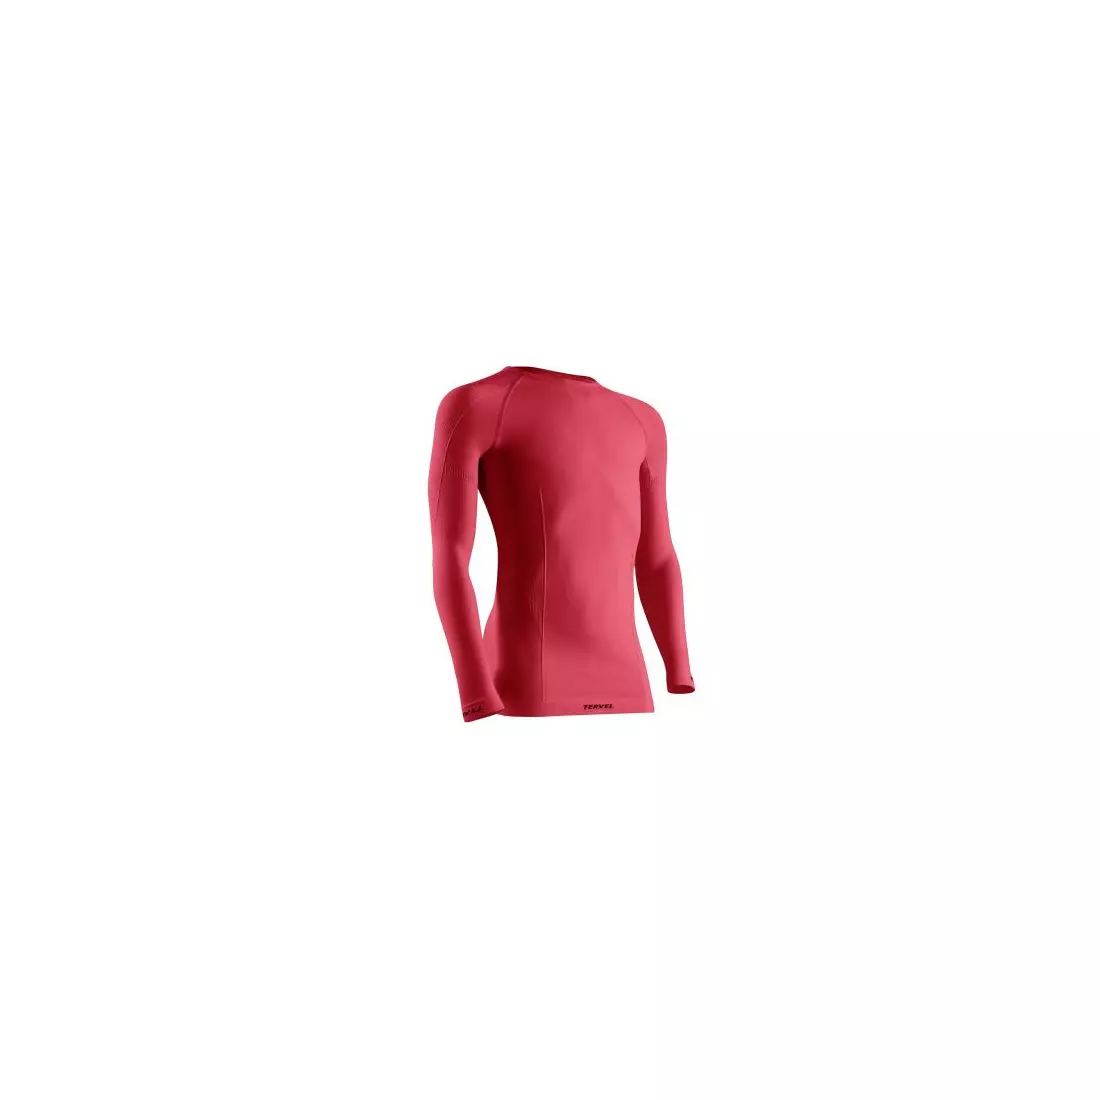 TERVEL - COMFORTLINE JUNIOR - D/R T-shirt, color: Red